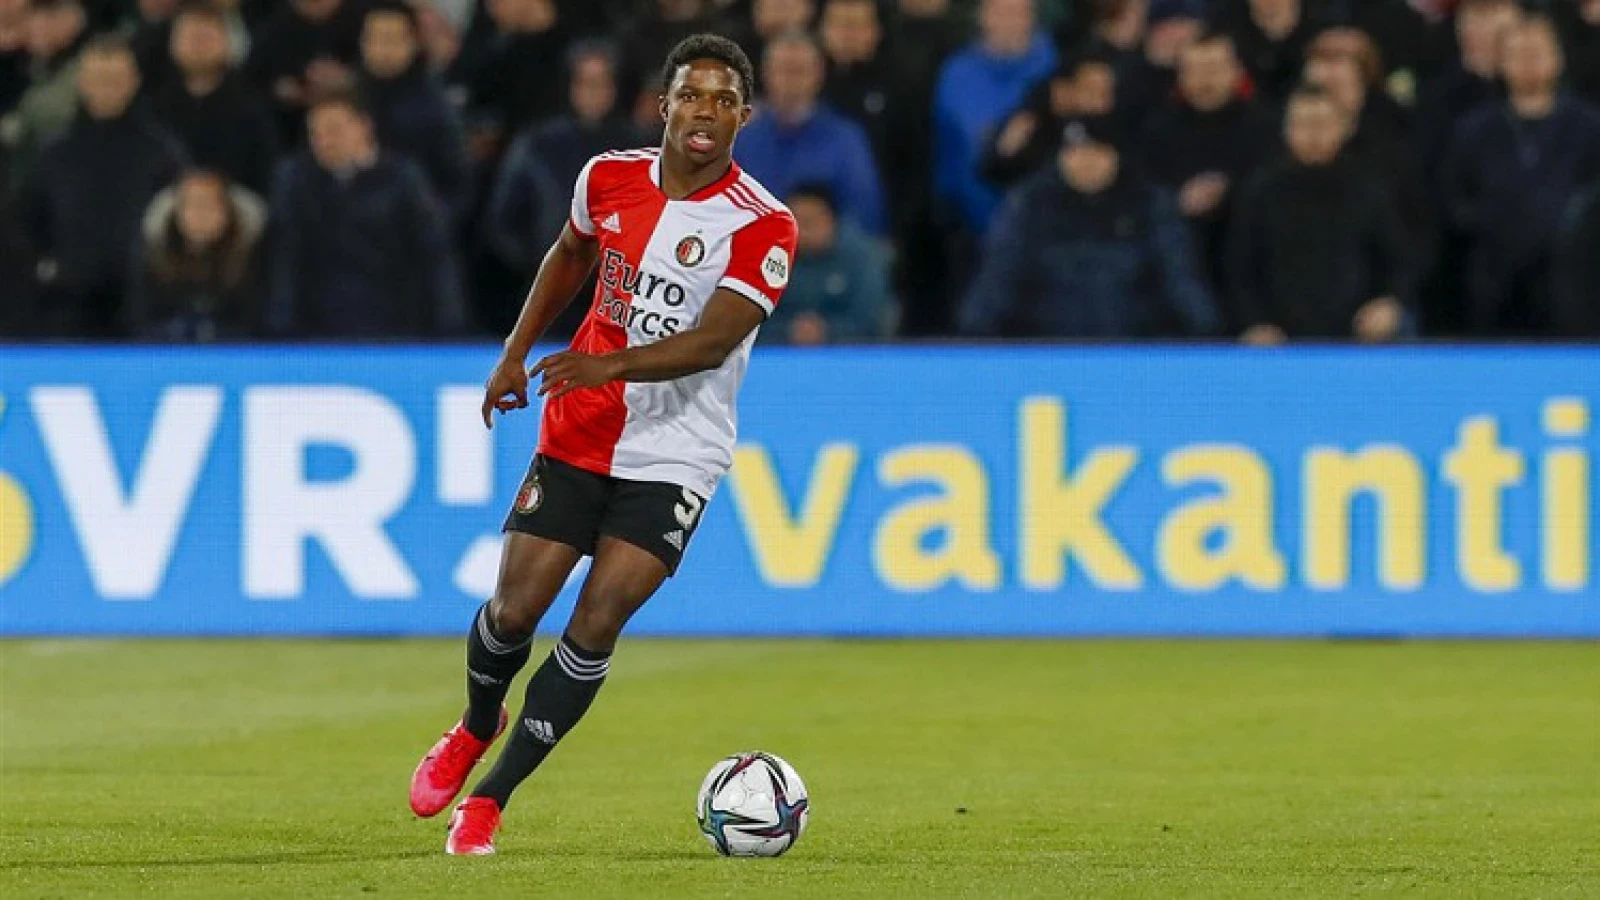 Feyenoord komt met medische update over Tyrell Malacia